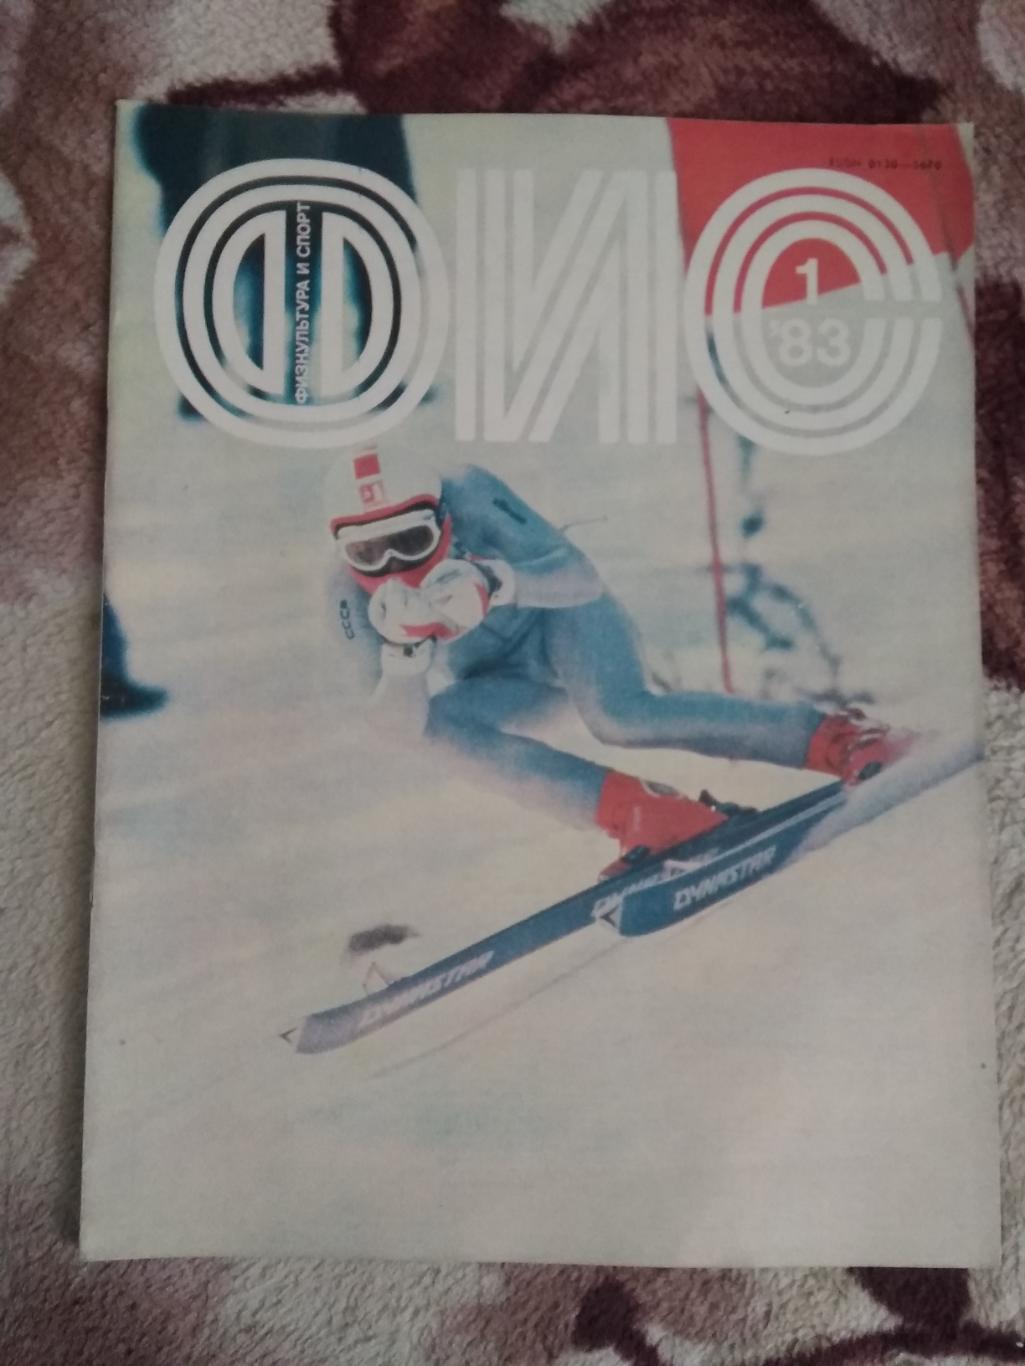 Журнал.Физкультура и спорт № 1 1983 г. (ФиС).